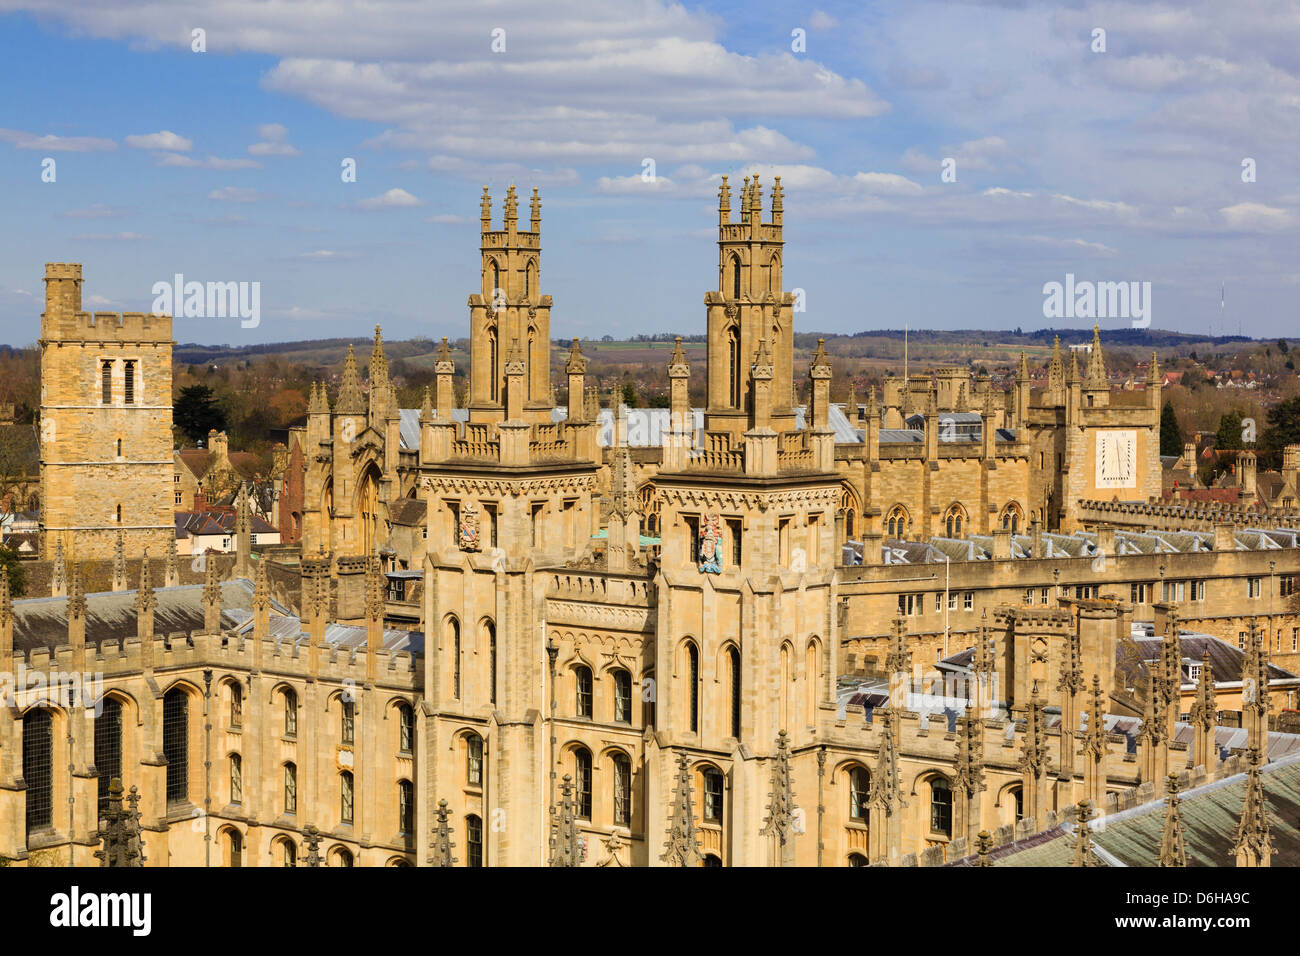 High view de Hawksmoor tours de All Souls College, l'université tous les fellows. Oxford, Oxfordshire, England, UK, Grande-Bretagne Banque D'Images